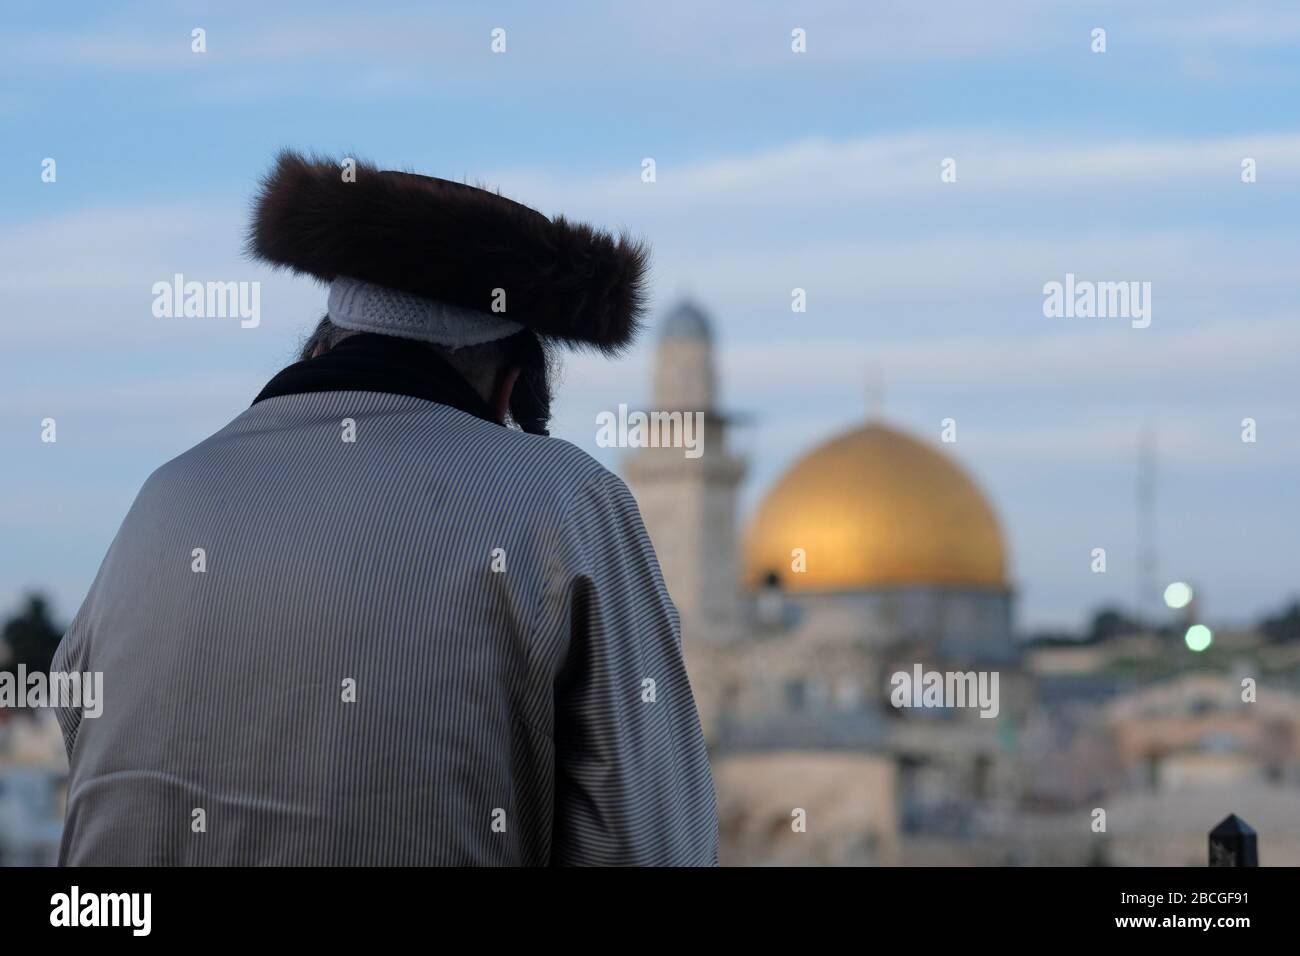 Un juif hassidique portant un shtreimel un chapeau de fourrure porté par de nombreux hommes juifs haredi mariés regarde le Dôme du Rocher un sanctuaire islamique situé sur le Mont du Temple connu des musulmans comme le Haram esh-Sharif dans la vieille ville de Jérusalem-est Israël Banque D'Images